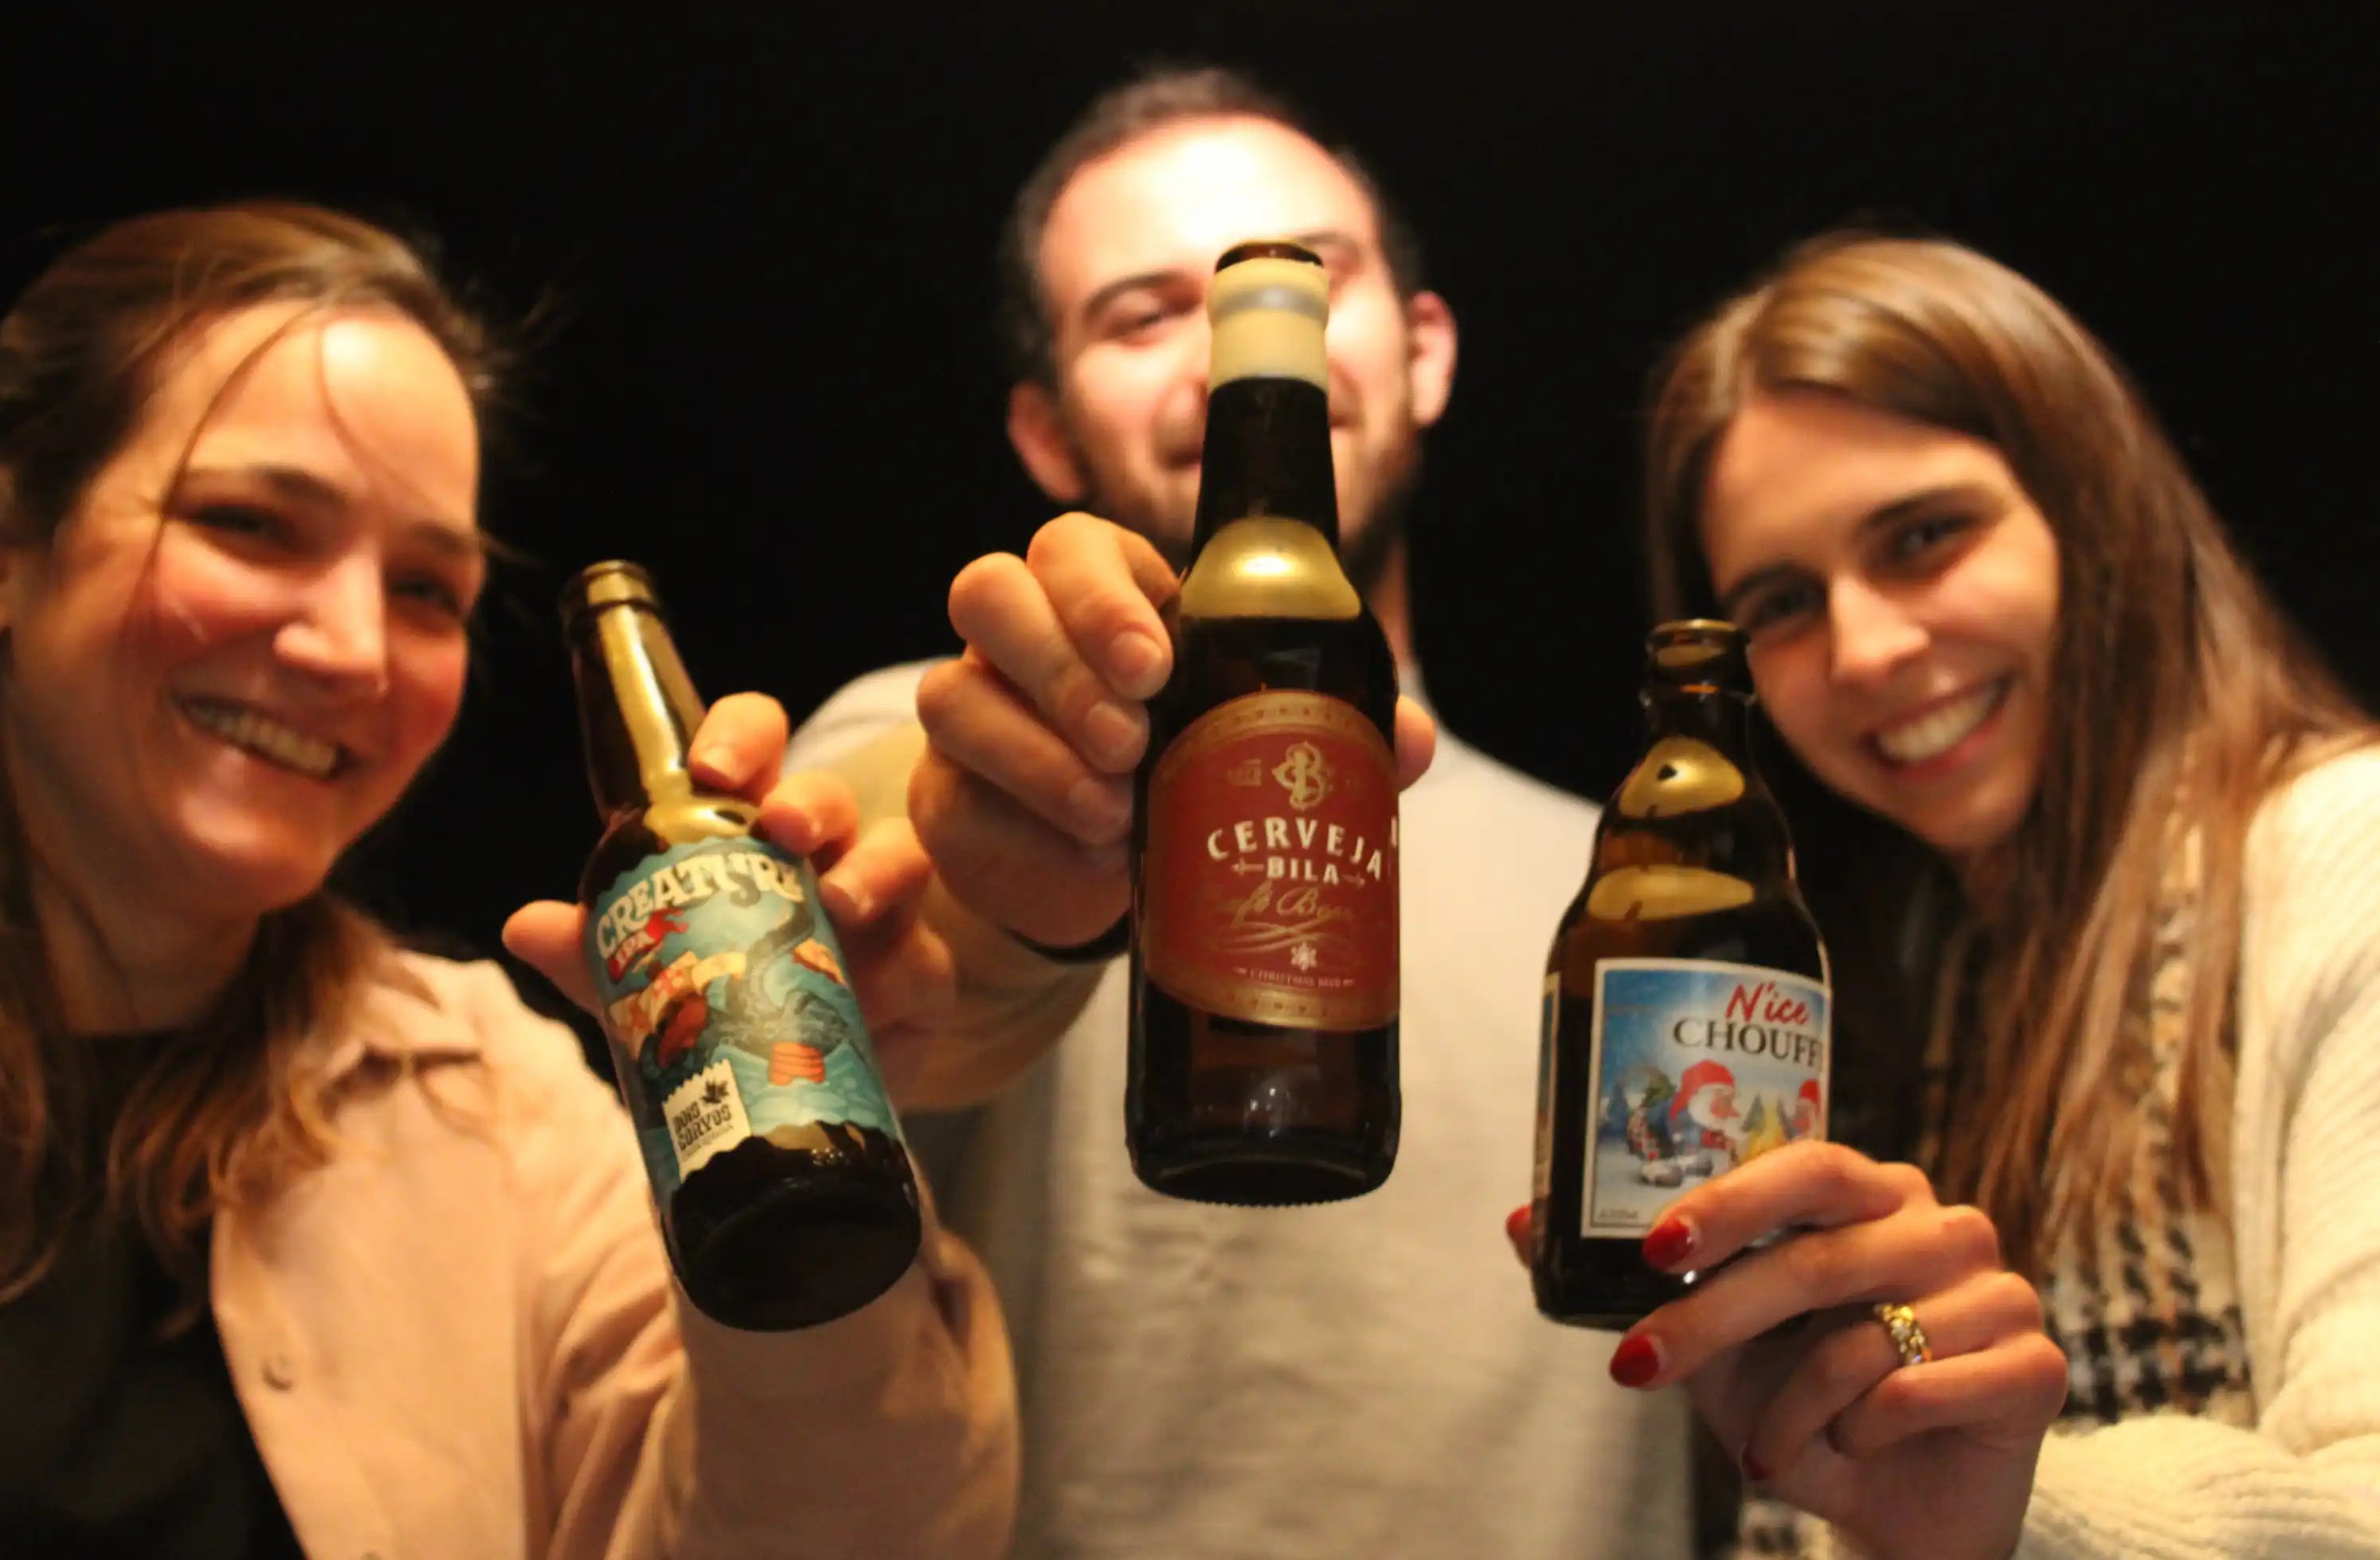 Duas raparigas e um rapaz a brindarem com três cervejas artesanais num ambiente divertido e fundo escuro